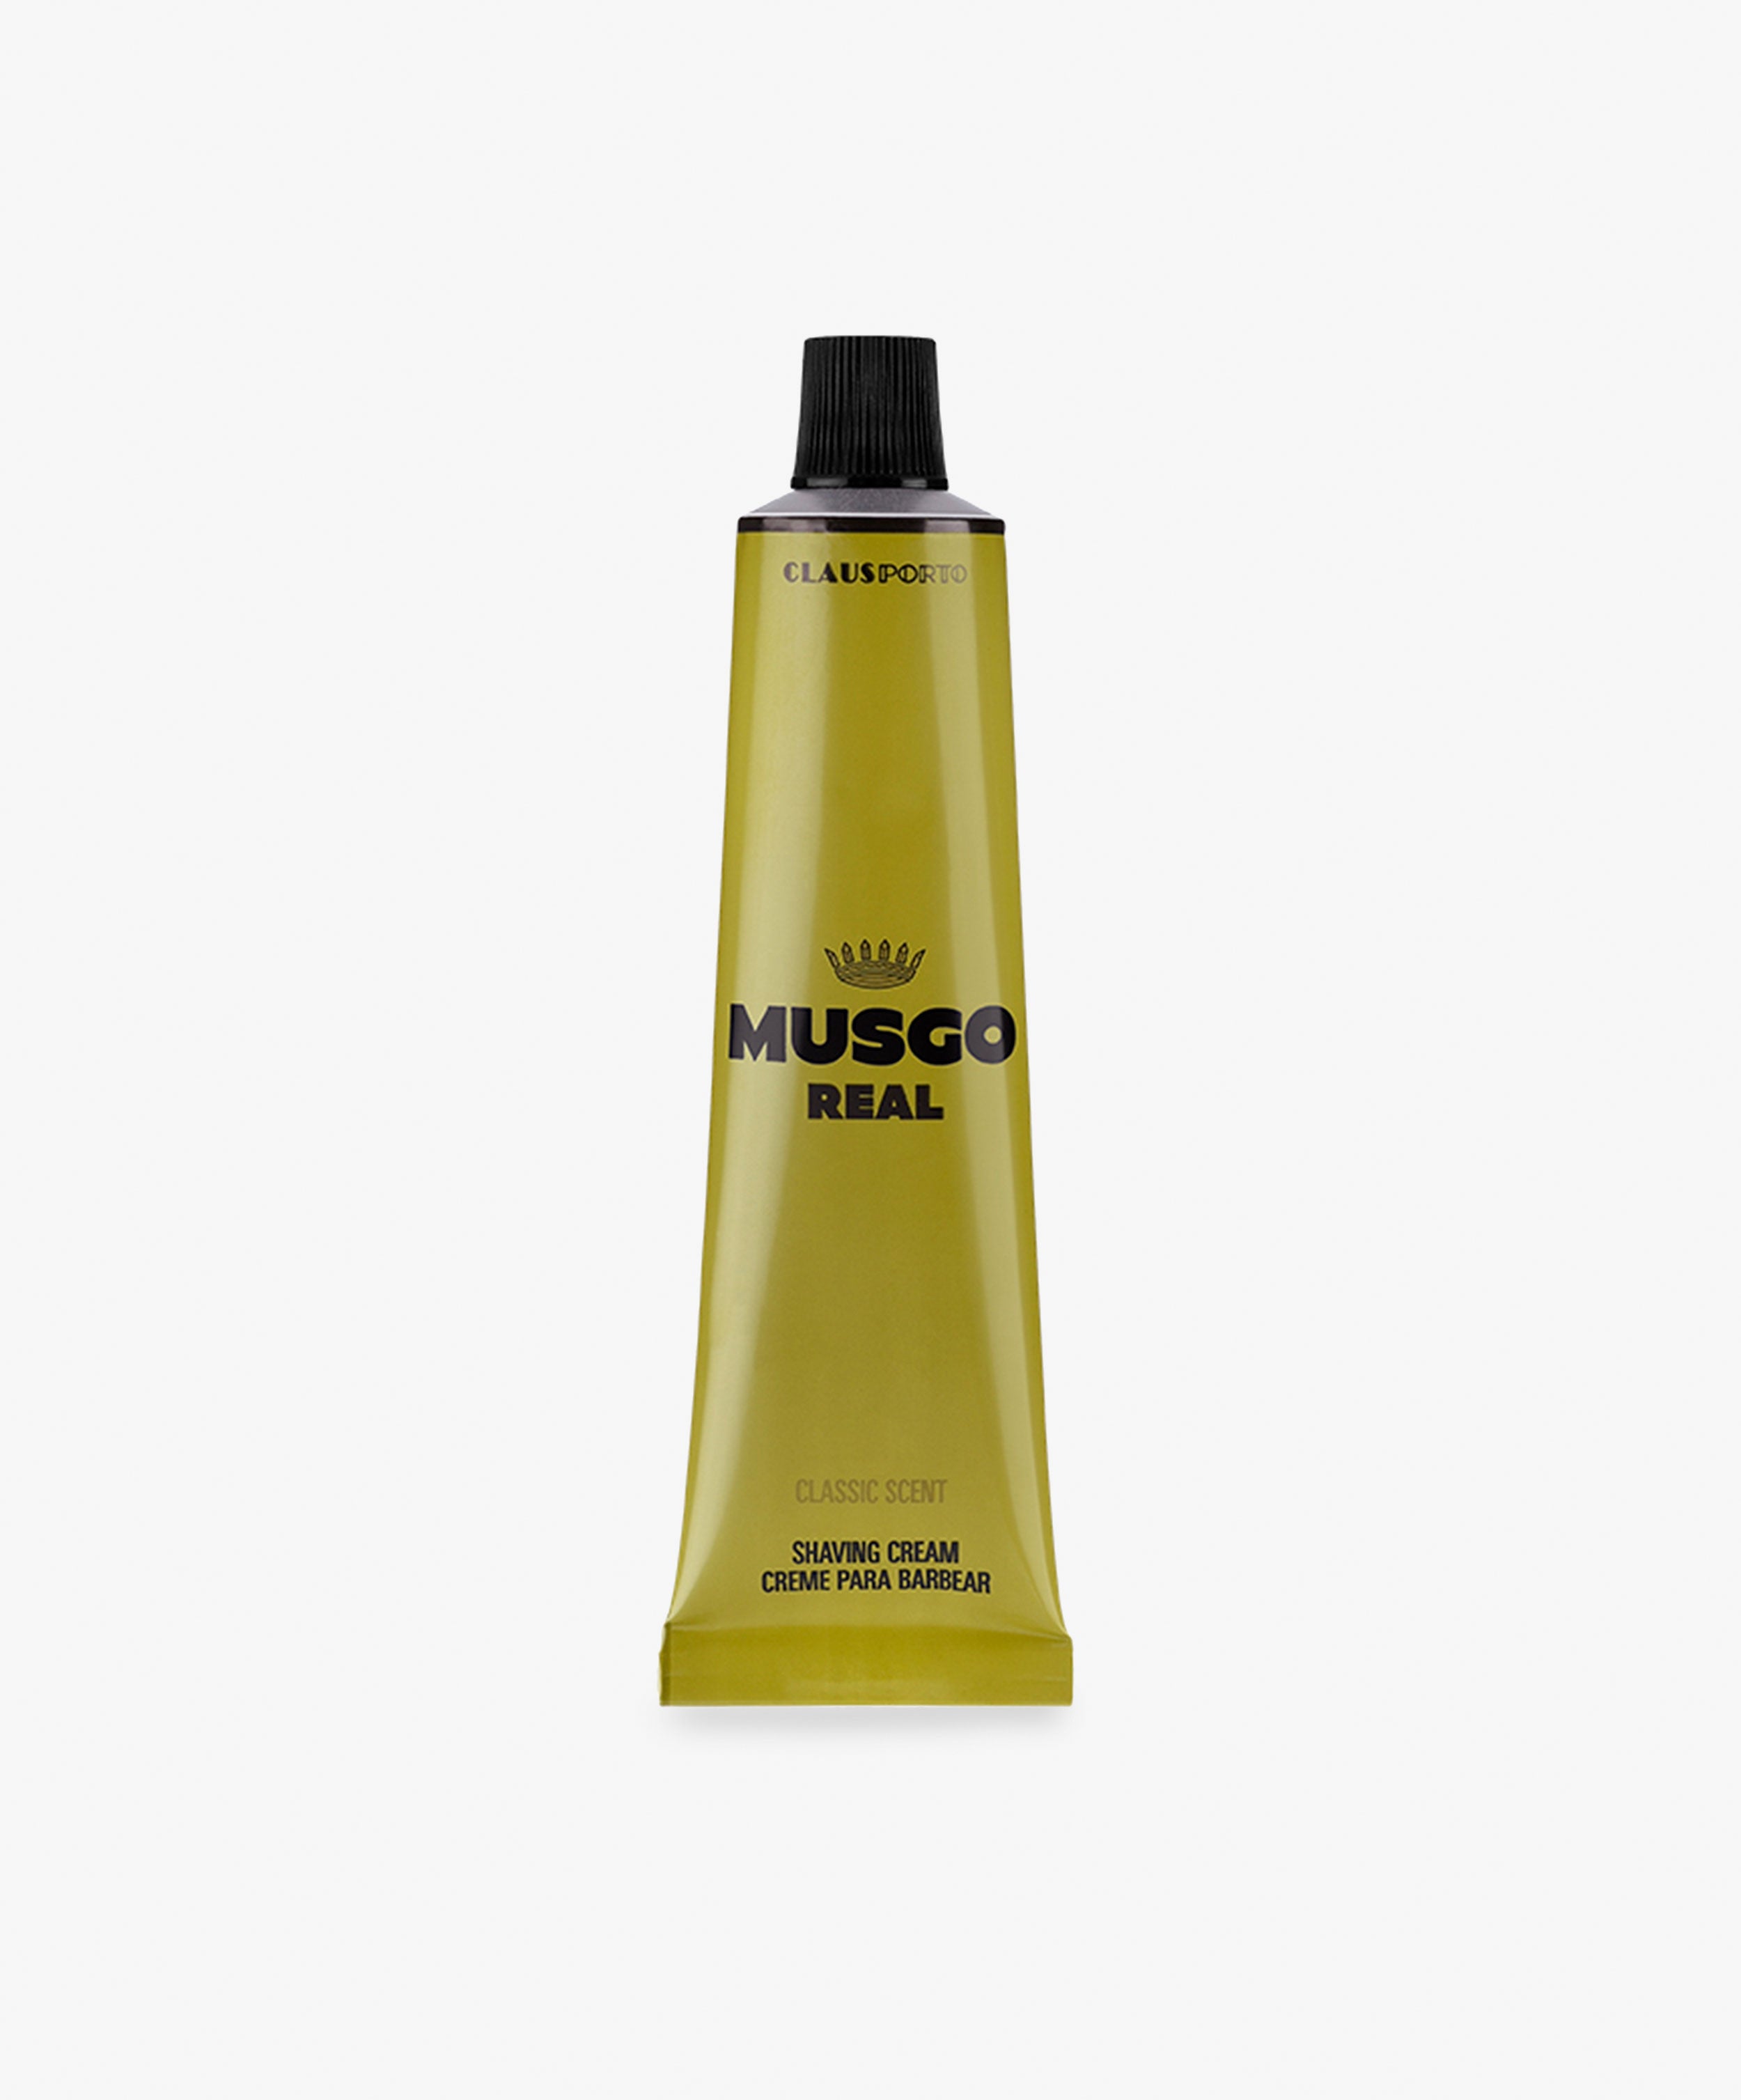 Musgo Real Shaving Cream, Classic